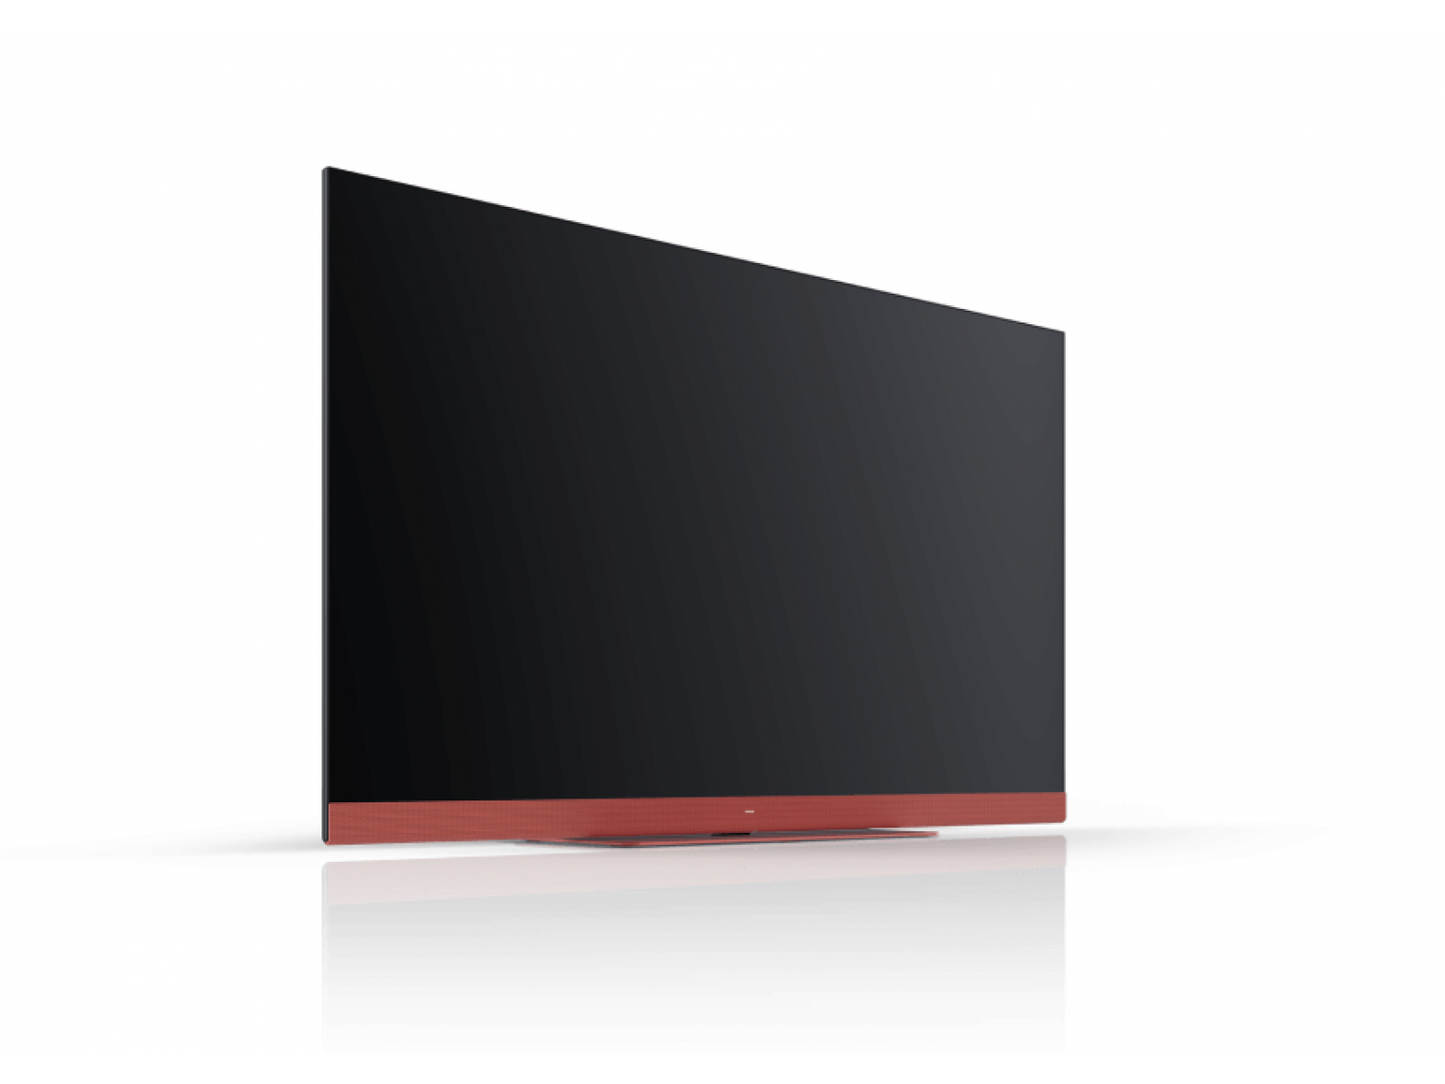 We. By Loewe SEE 32 coral red smart televisie met ingebouwde soundbar